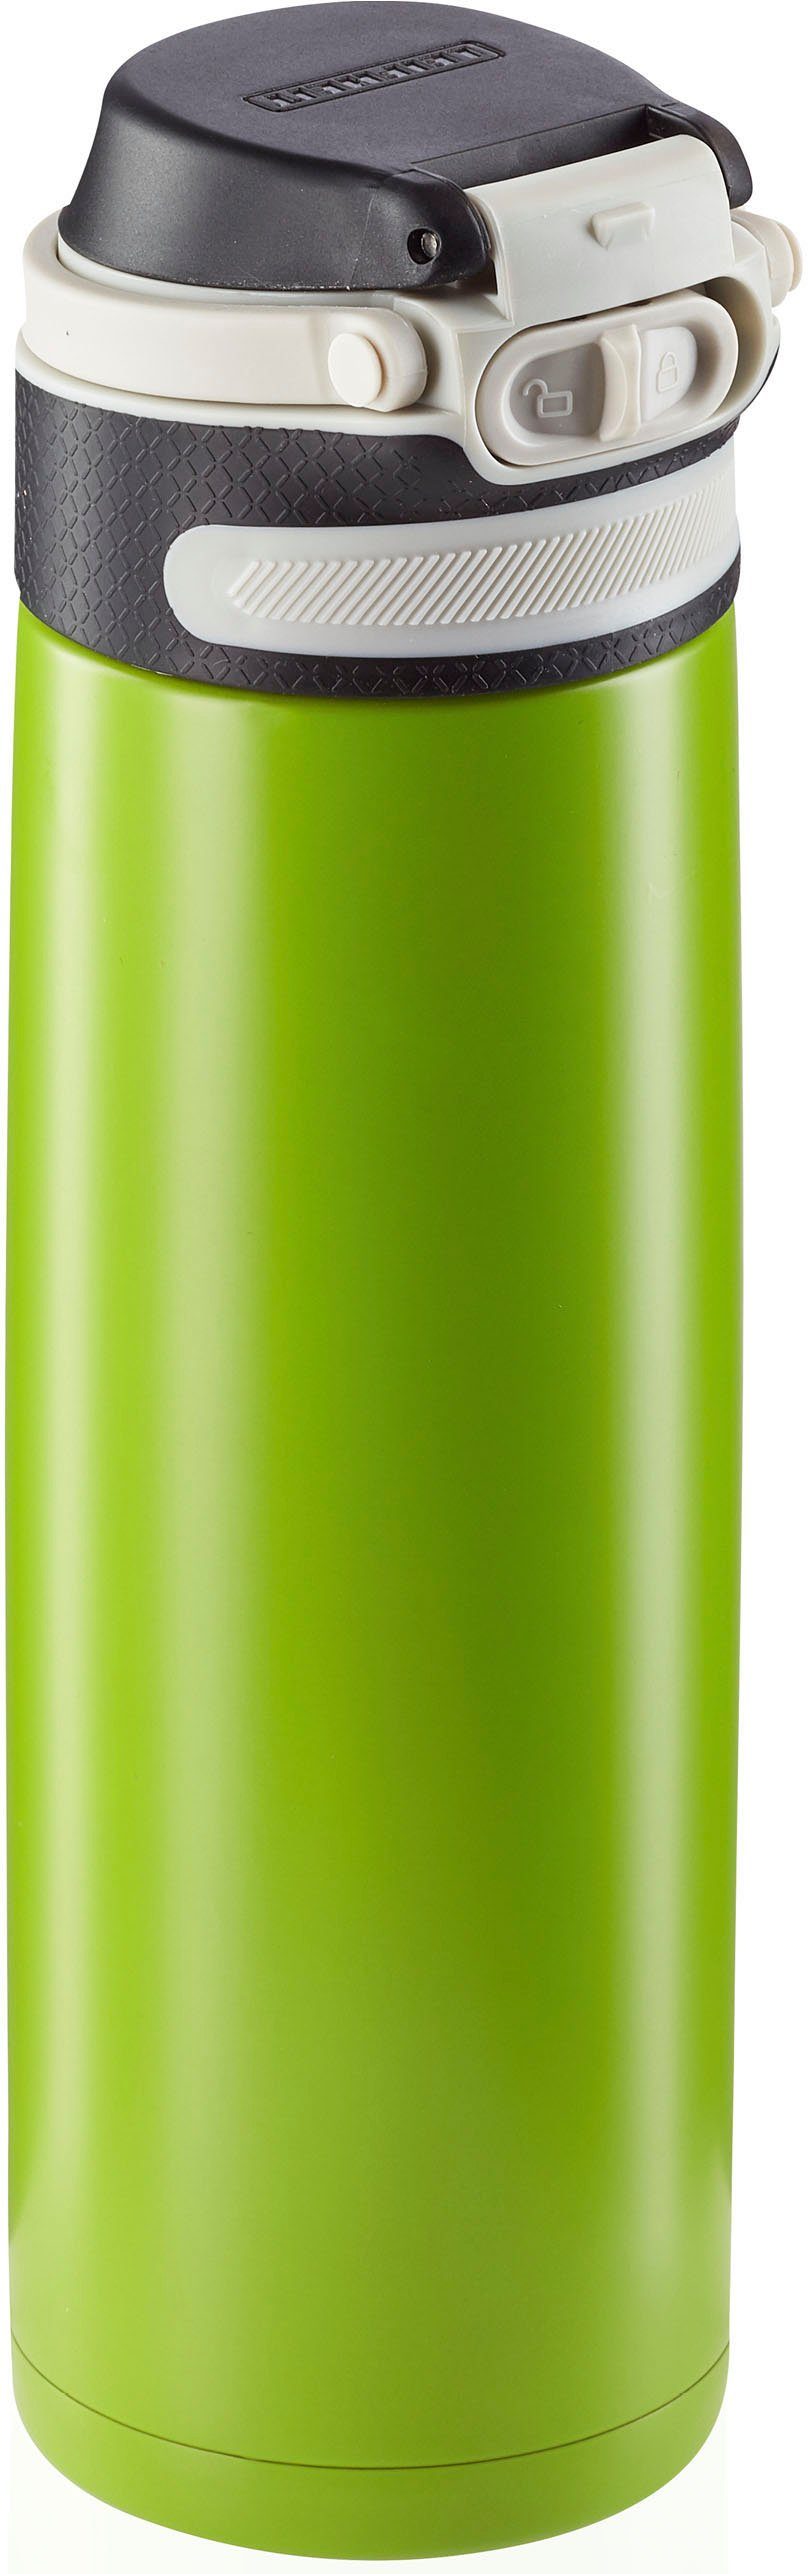 Leifheit Thermoflasche Flip, 600 ml kiwi